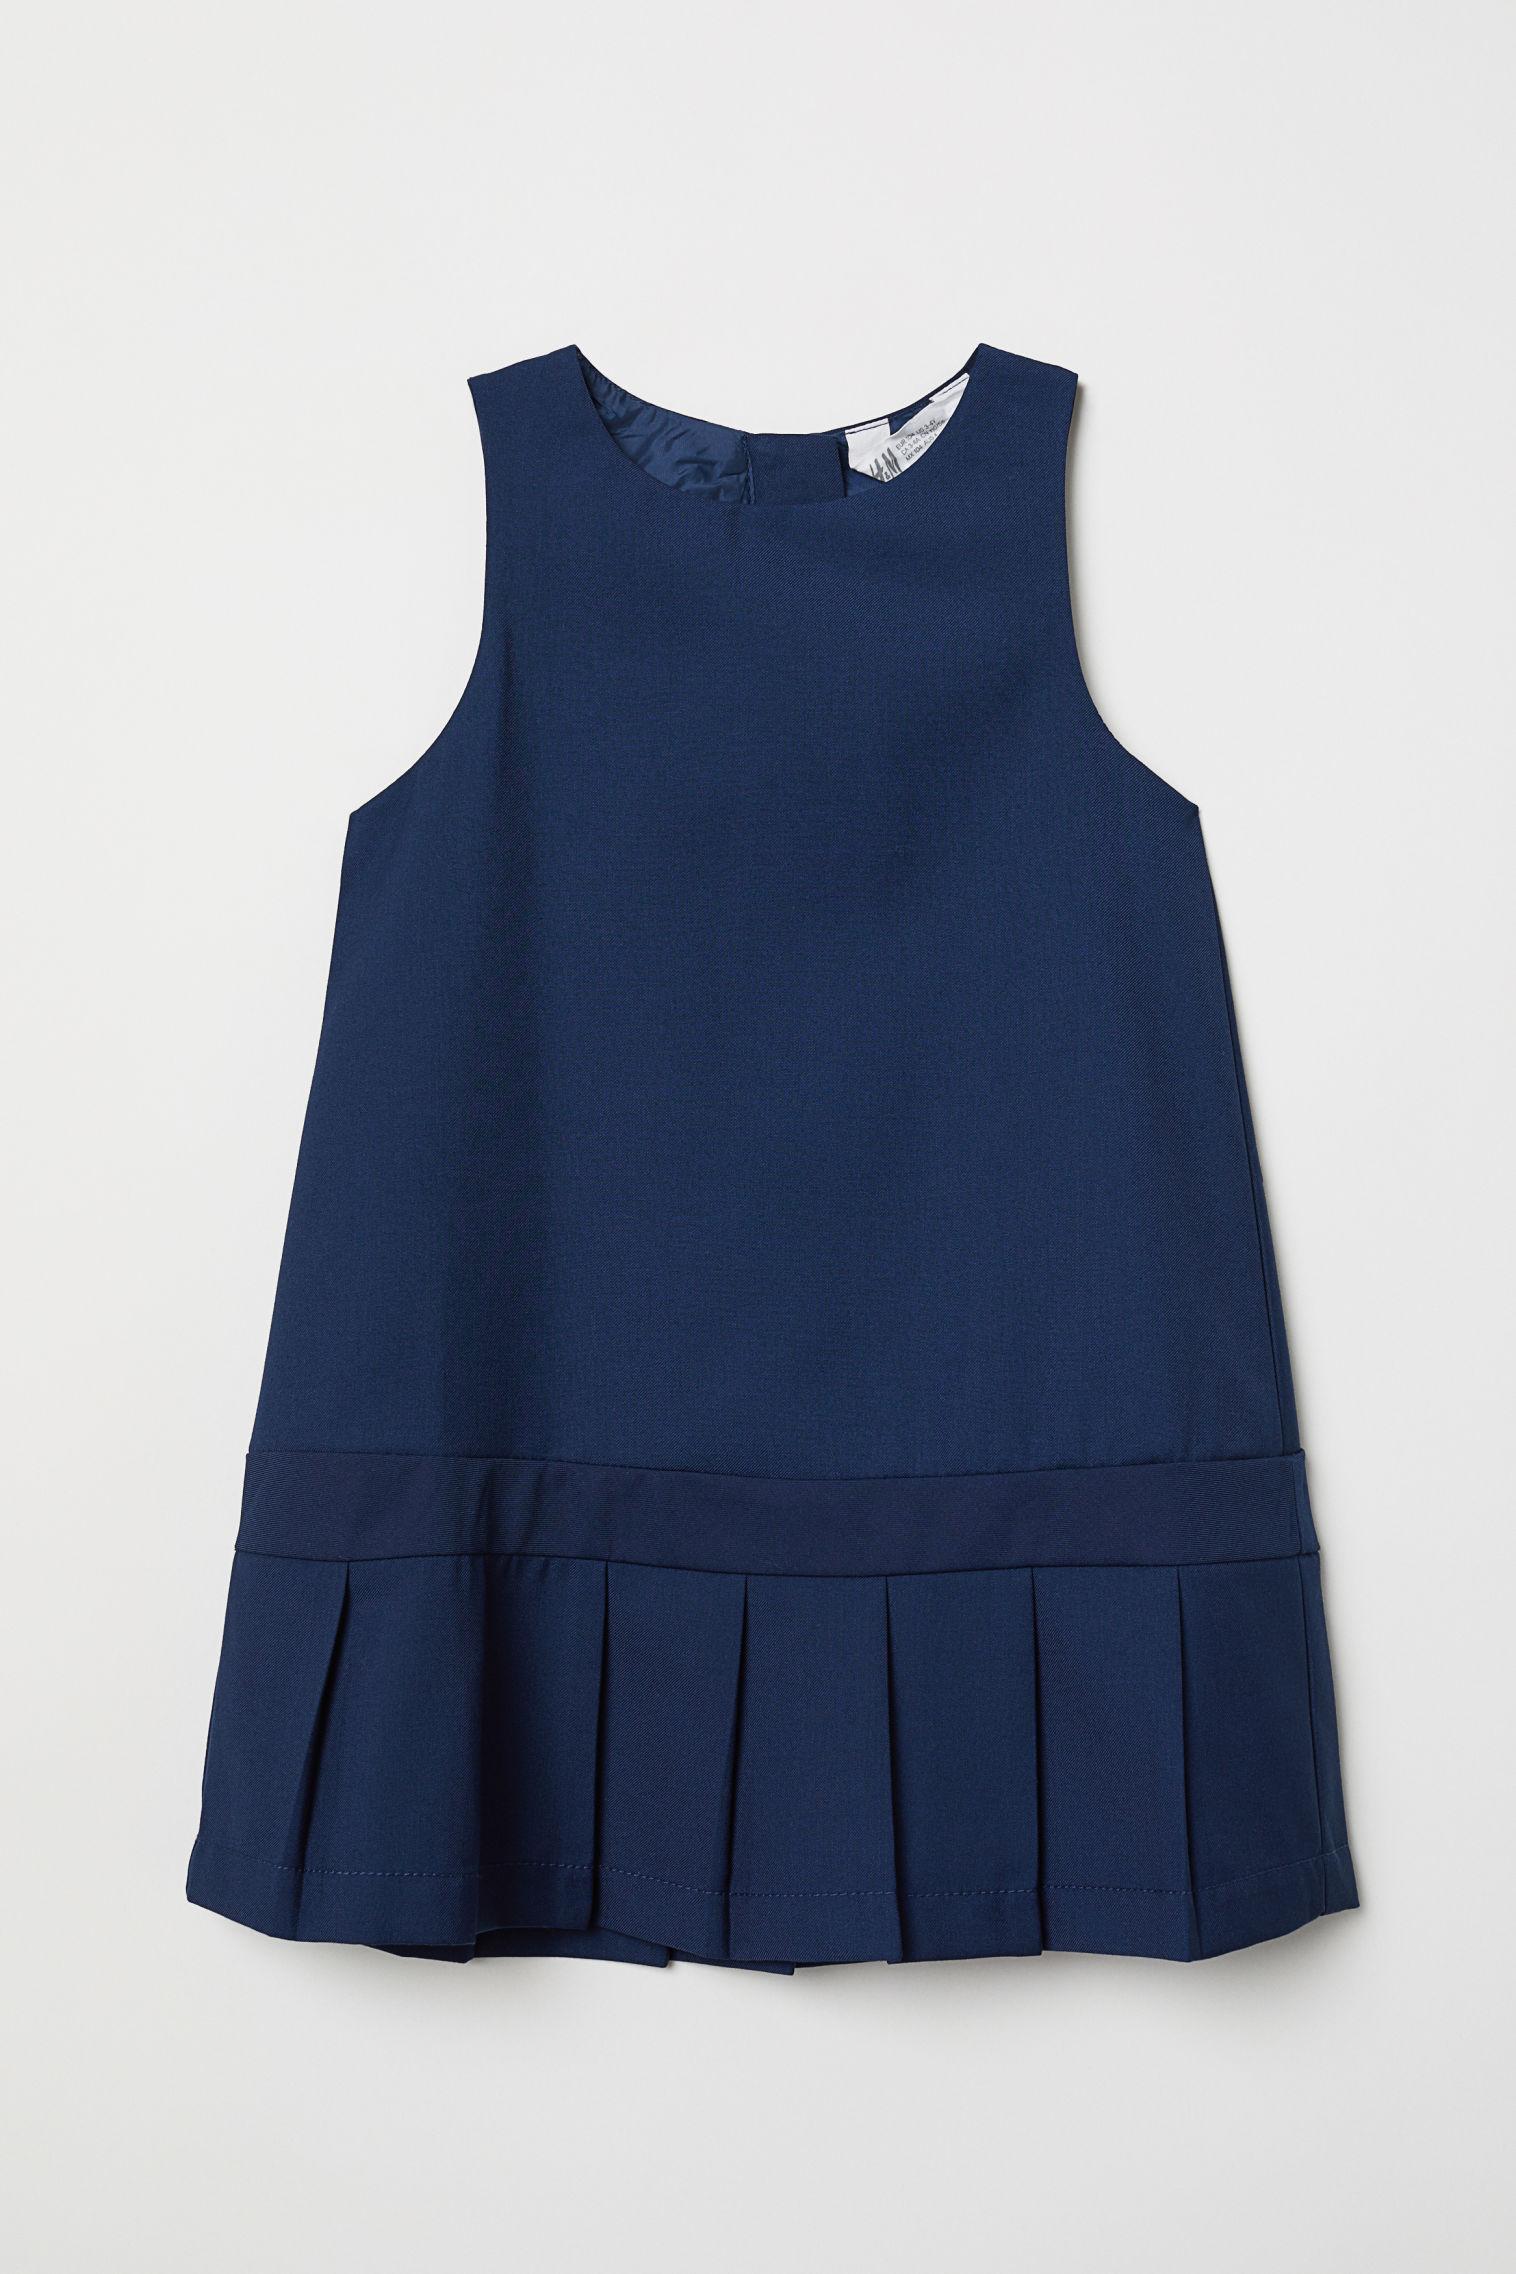 Отзыв на Платье со складками из Интернет-Магазина H&M